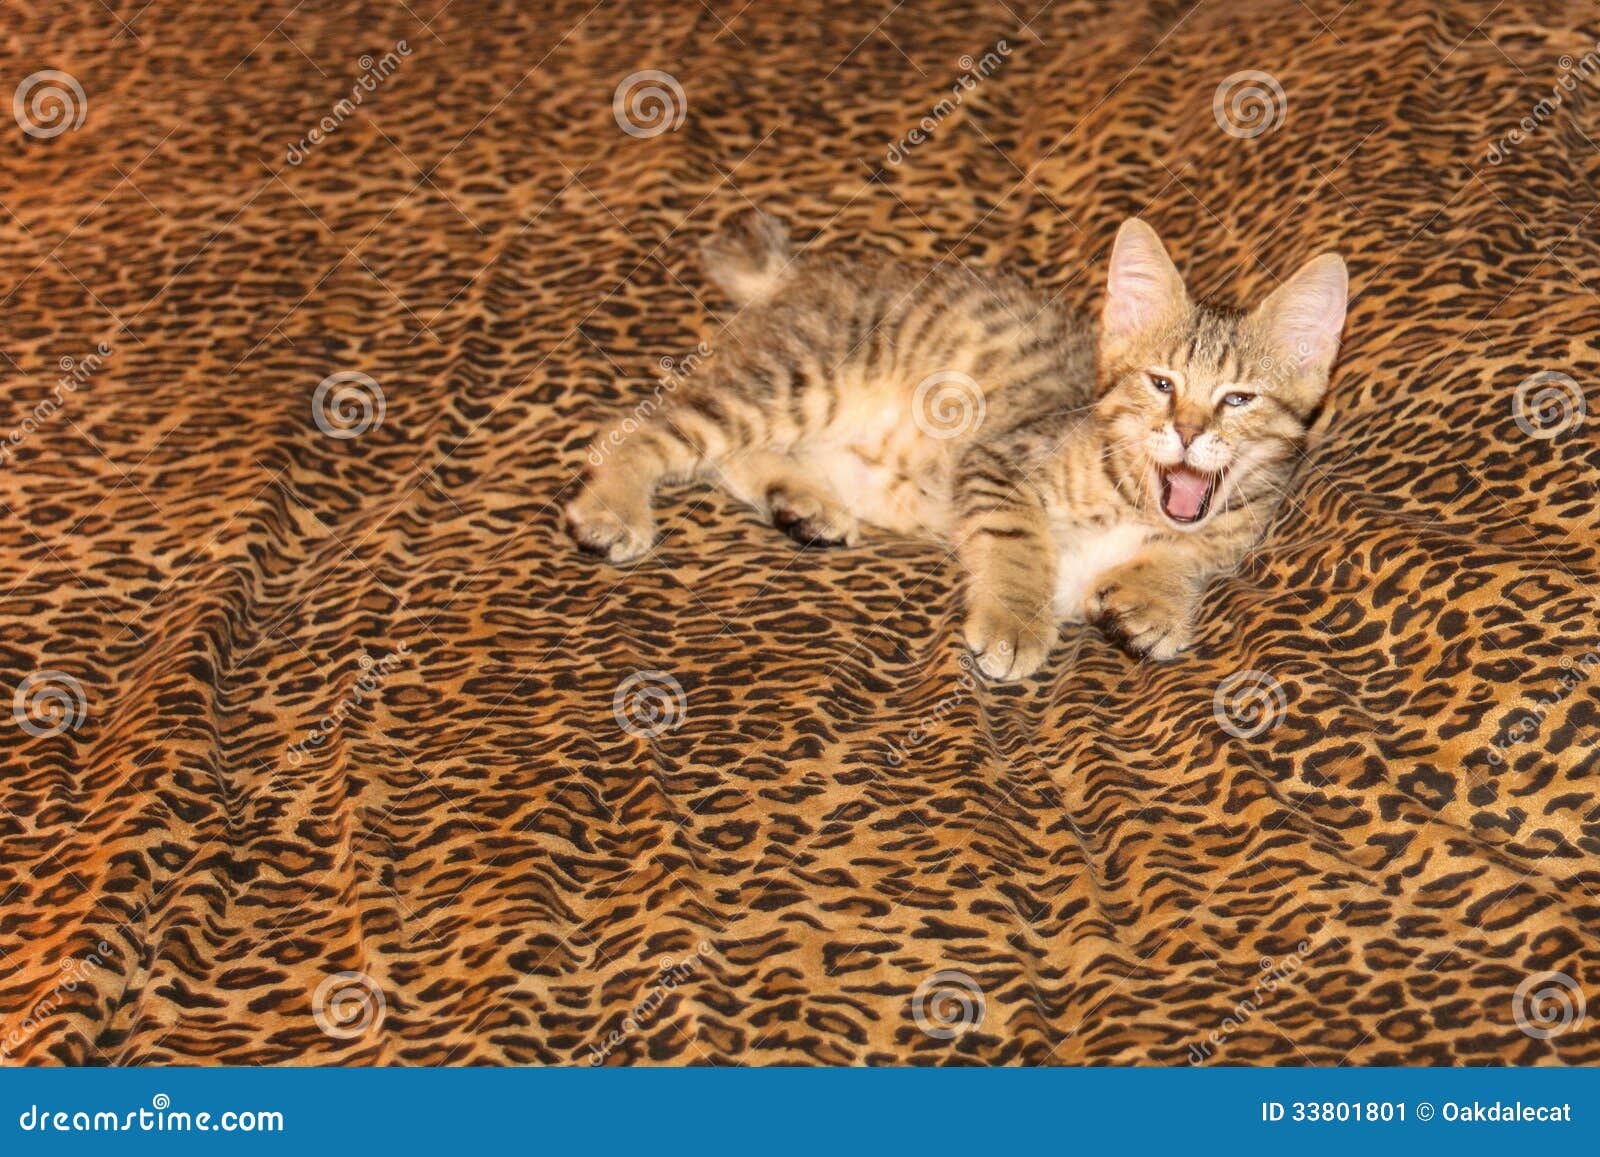 在豹子板料的打呵欠的Pixiebob小猫. 与巨型畸形的人的爪子，从一个狂放的美洲野猫的一个后裔和一只野生猫的这只三个月的老镶边Pixiebob小猫，看在家胡乱地基于豹子样式板料。